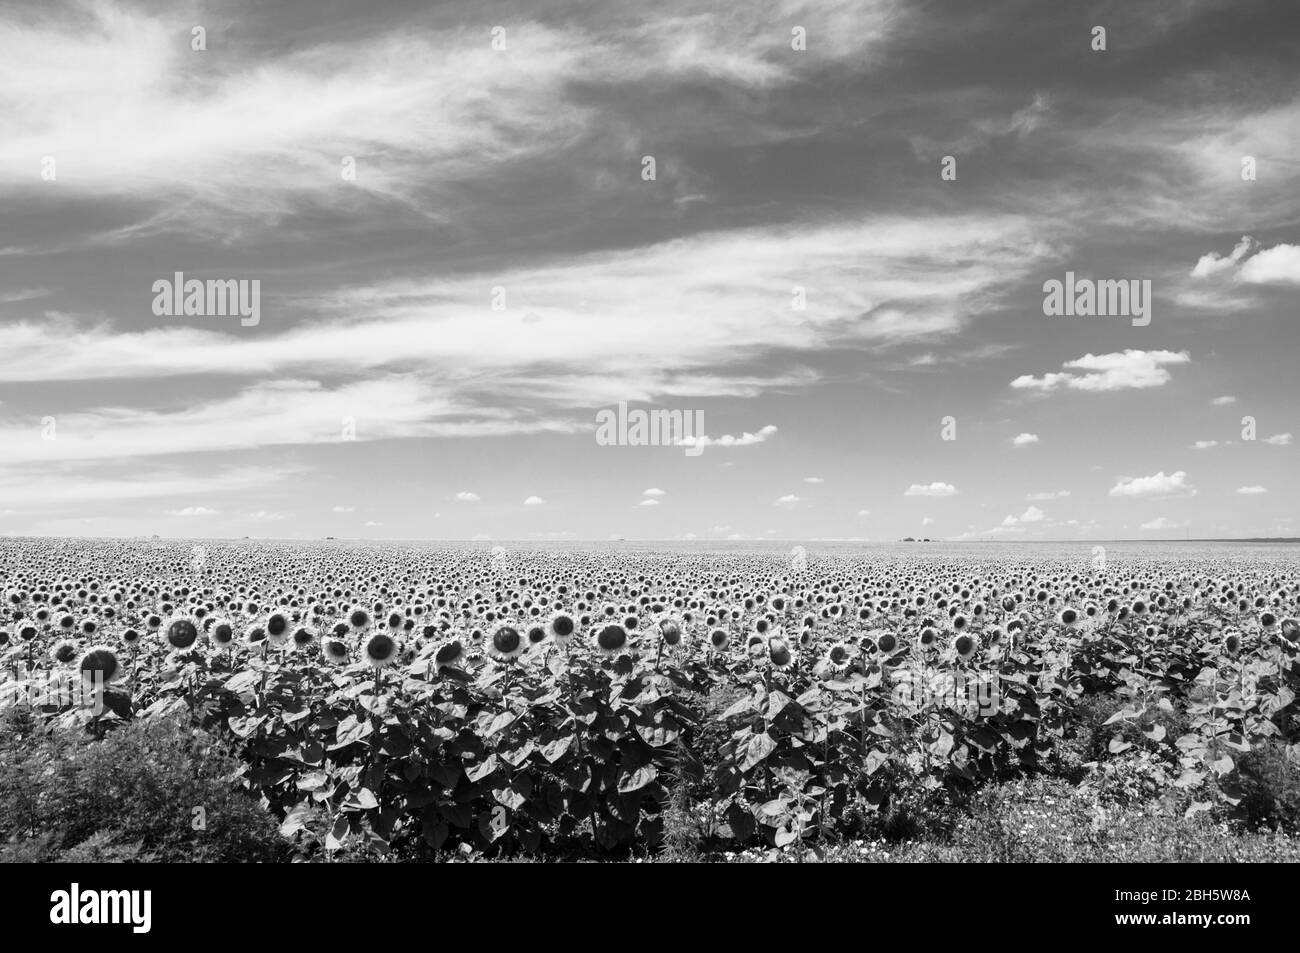 Photo en noir et blanc de Helianthus annuus fleurit. Paysage rural ukrainien. Champ agricole de renus Helianthus tournesols qui utilisent comme brut à Banque D'Images